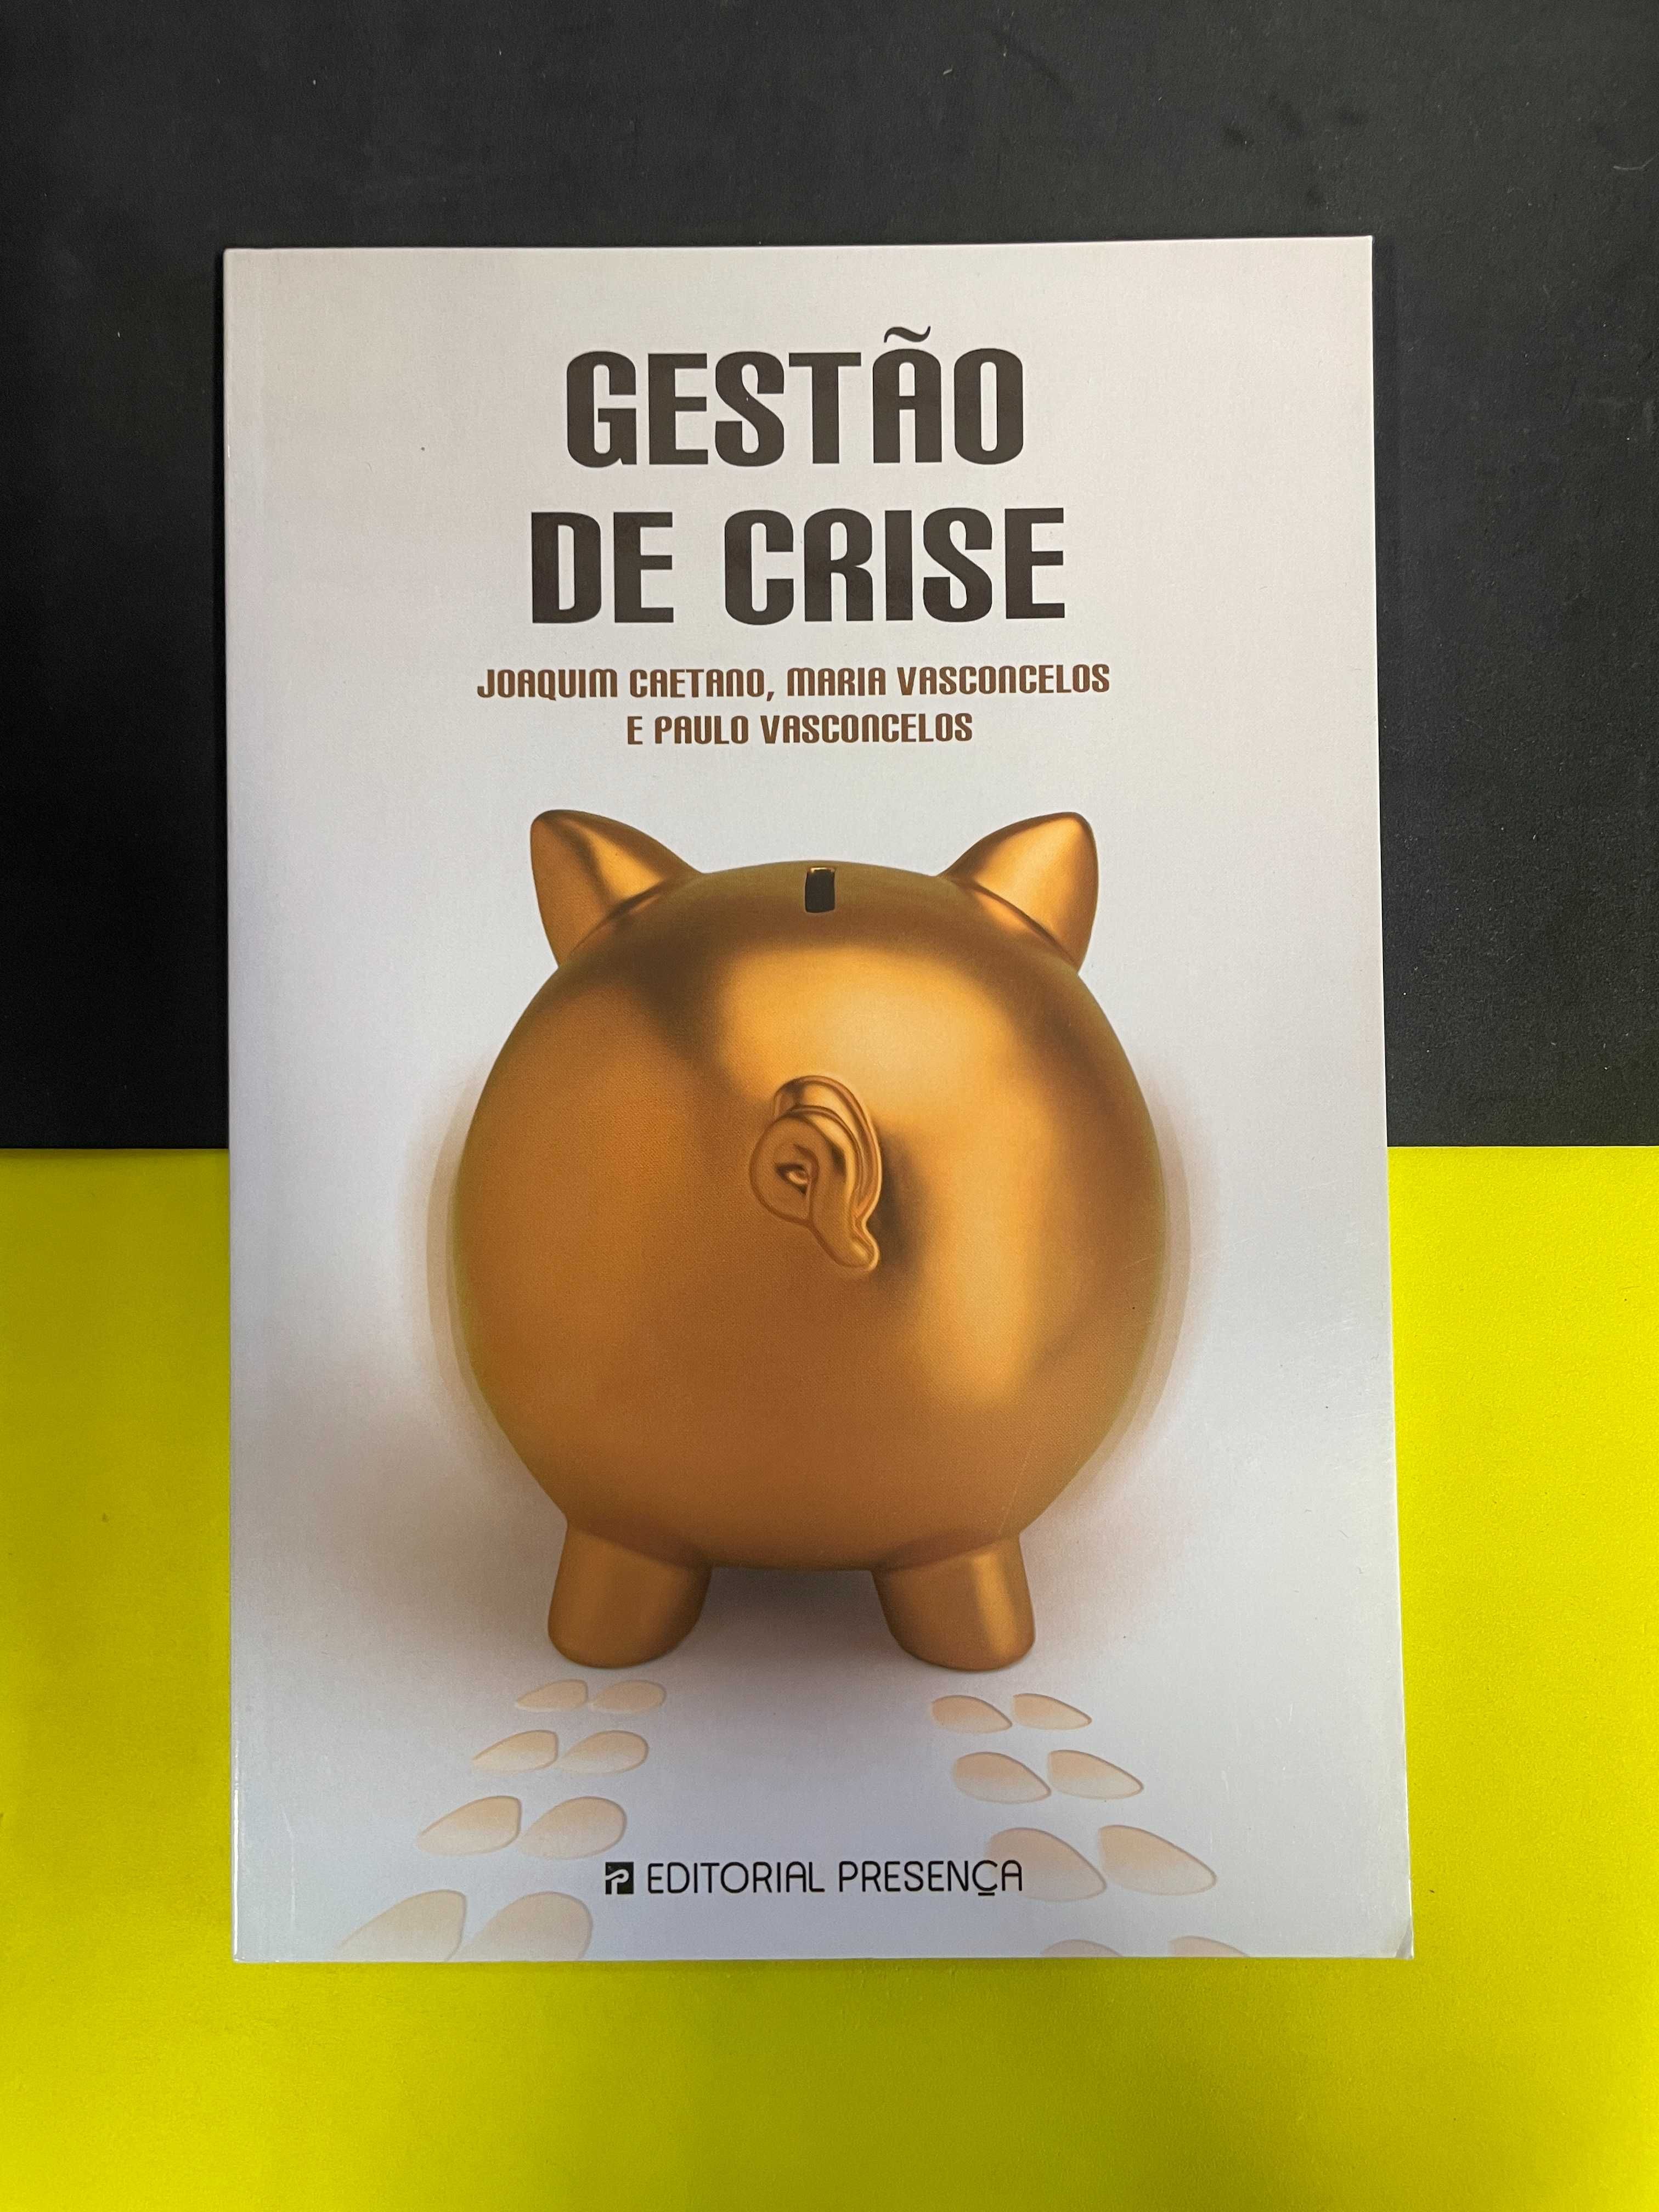 Joaquim Caetano - Gestão de Crise